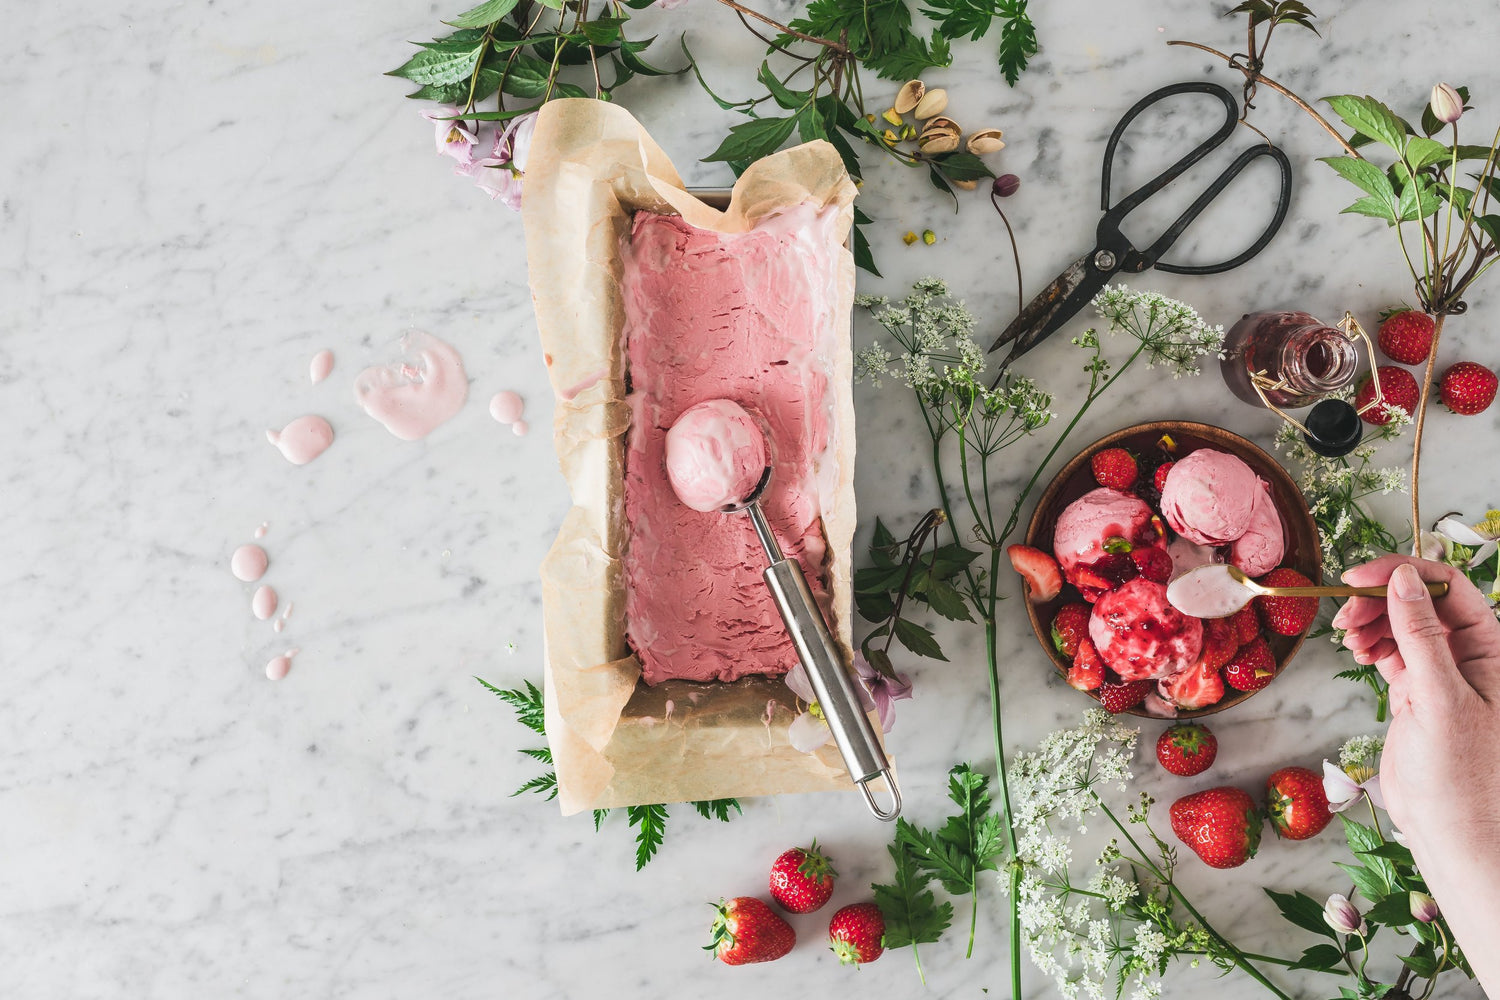 Strawberry Ice Cream Recipe in the Thermomix